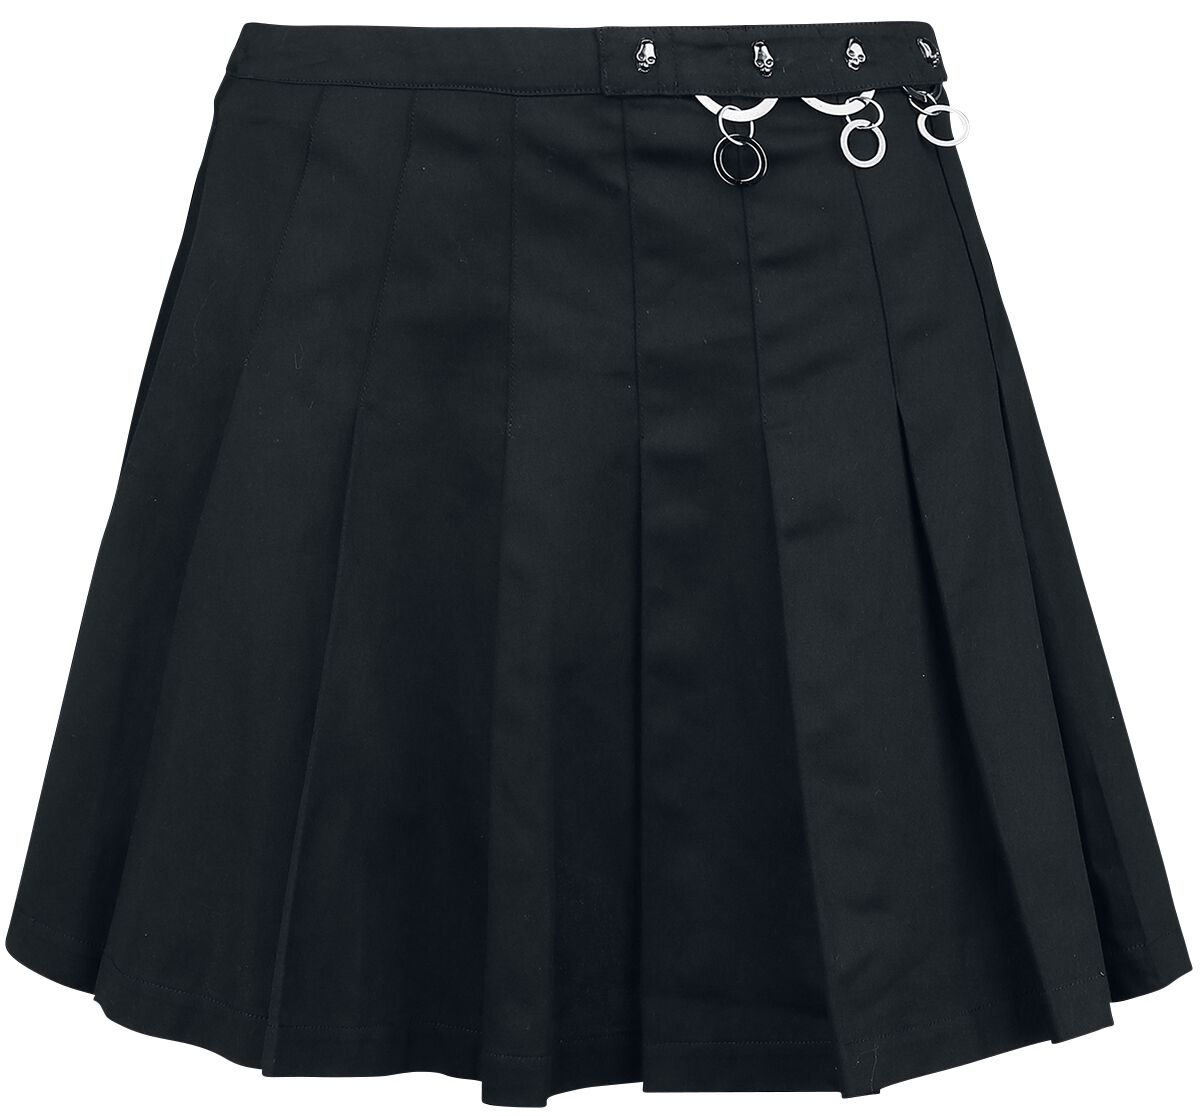 Banned Alternative - Gothic Kurzer Rock - Pleated Ring Skirt - XS bis XL - für Damen - Größe M - schwarz